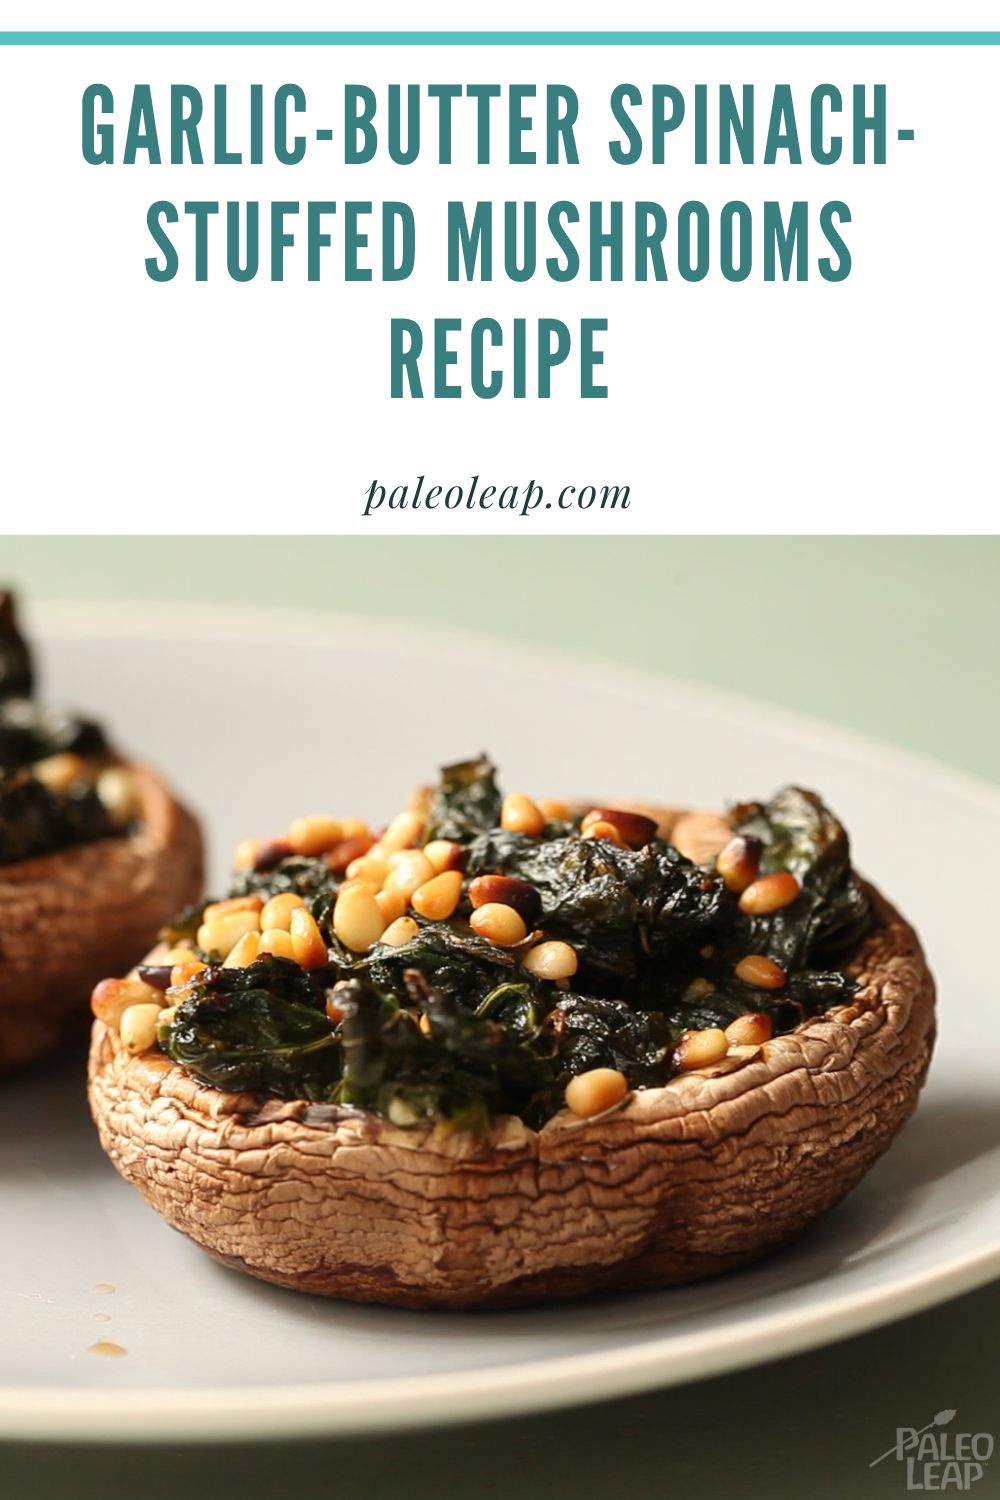 Garlic-Butter Spinach-Stuffed Mushrooms Recipe | Paleo Leap